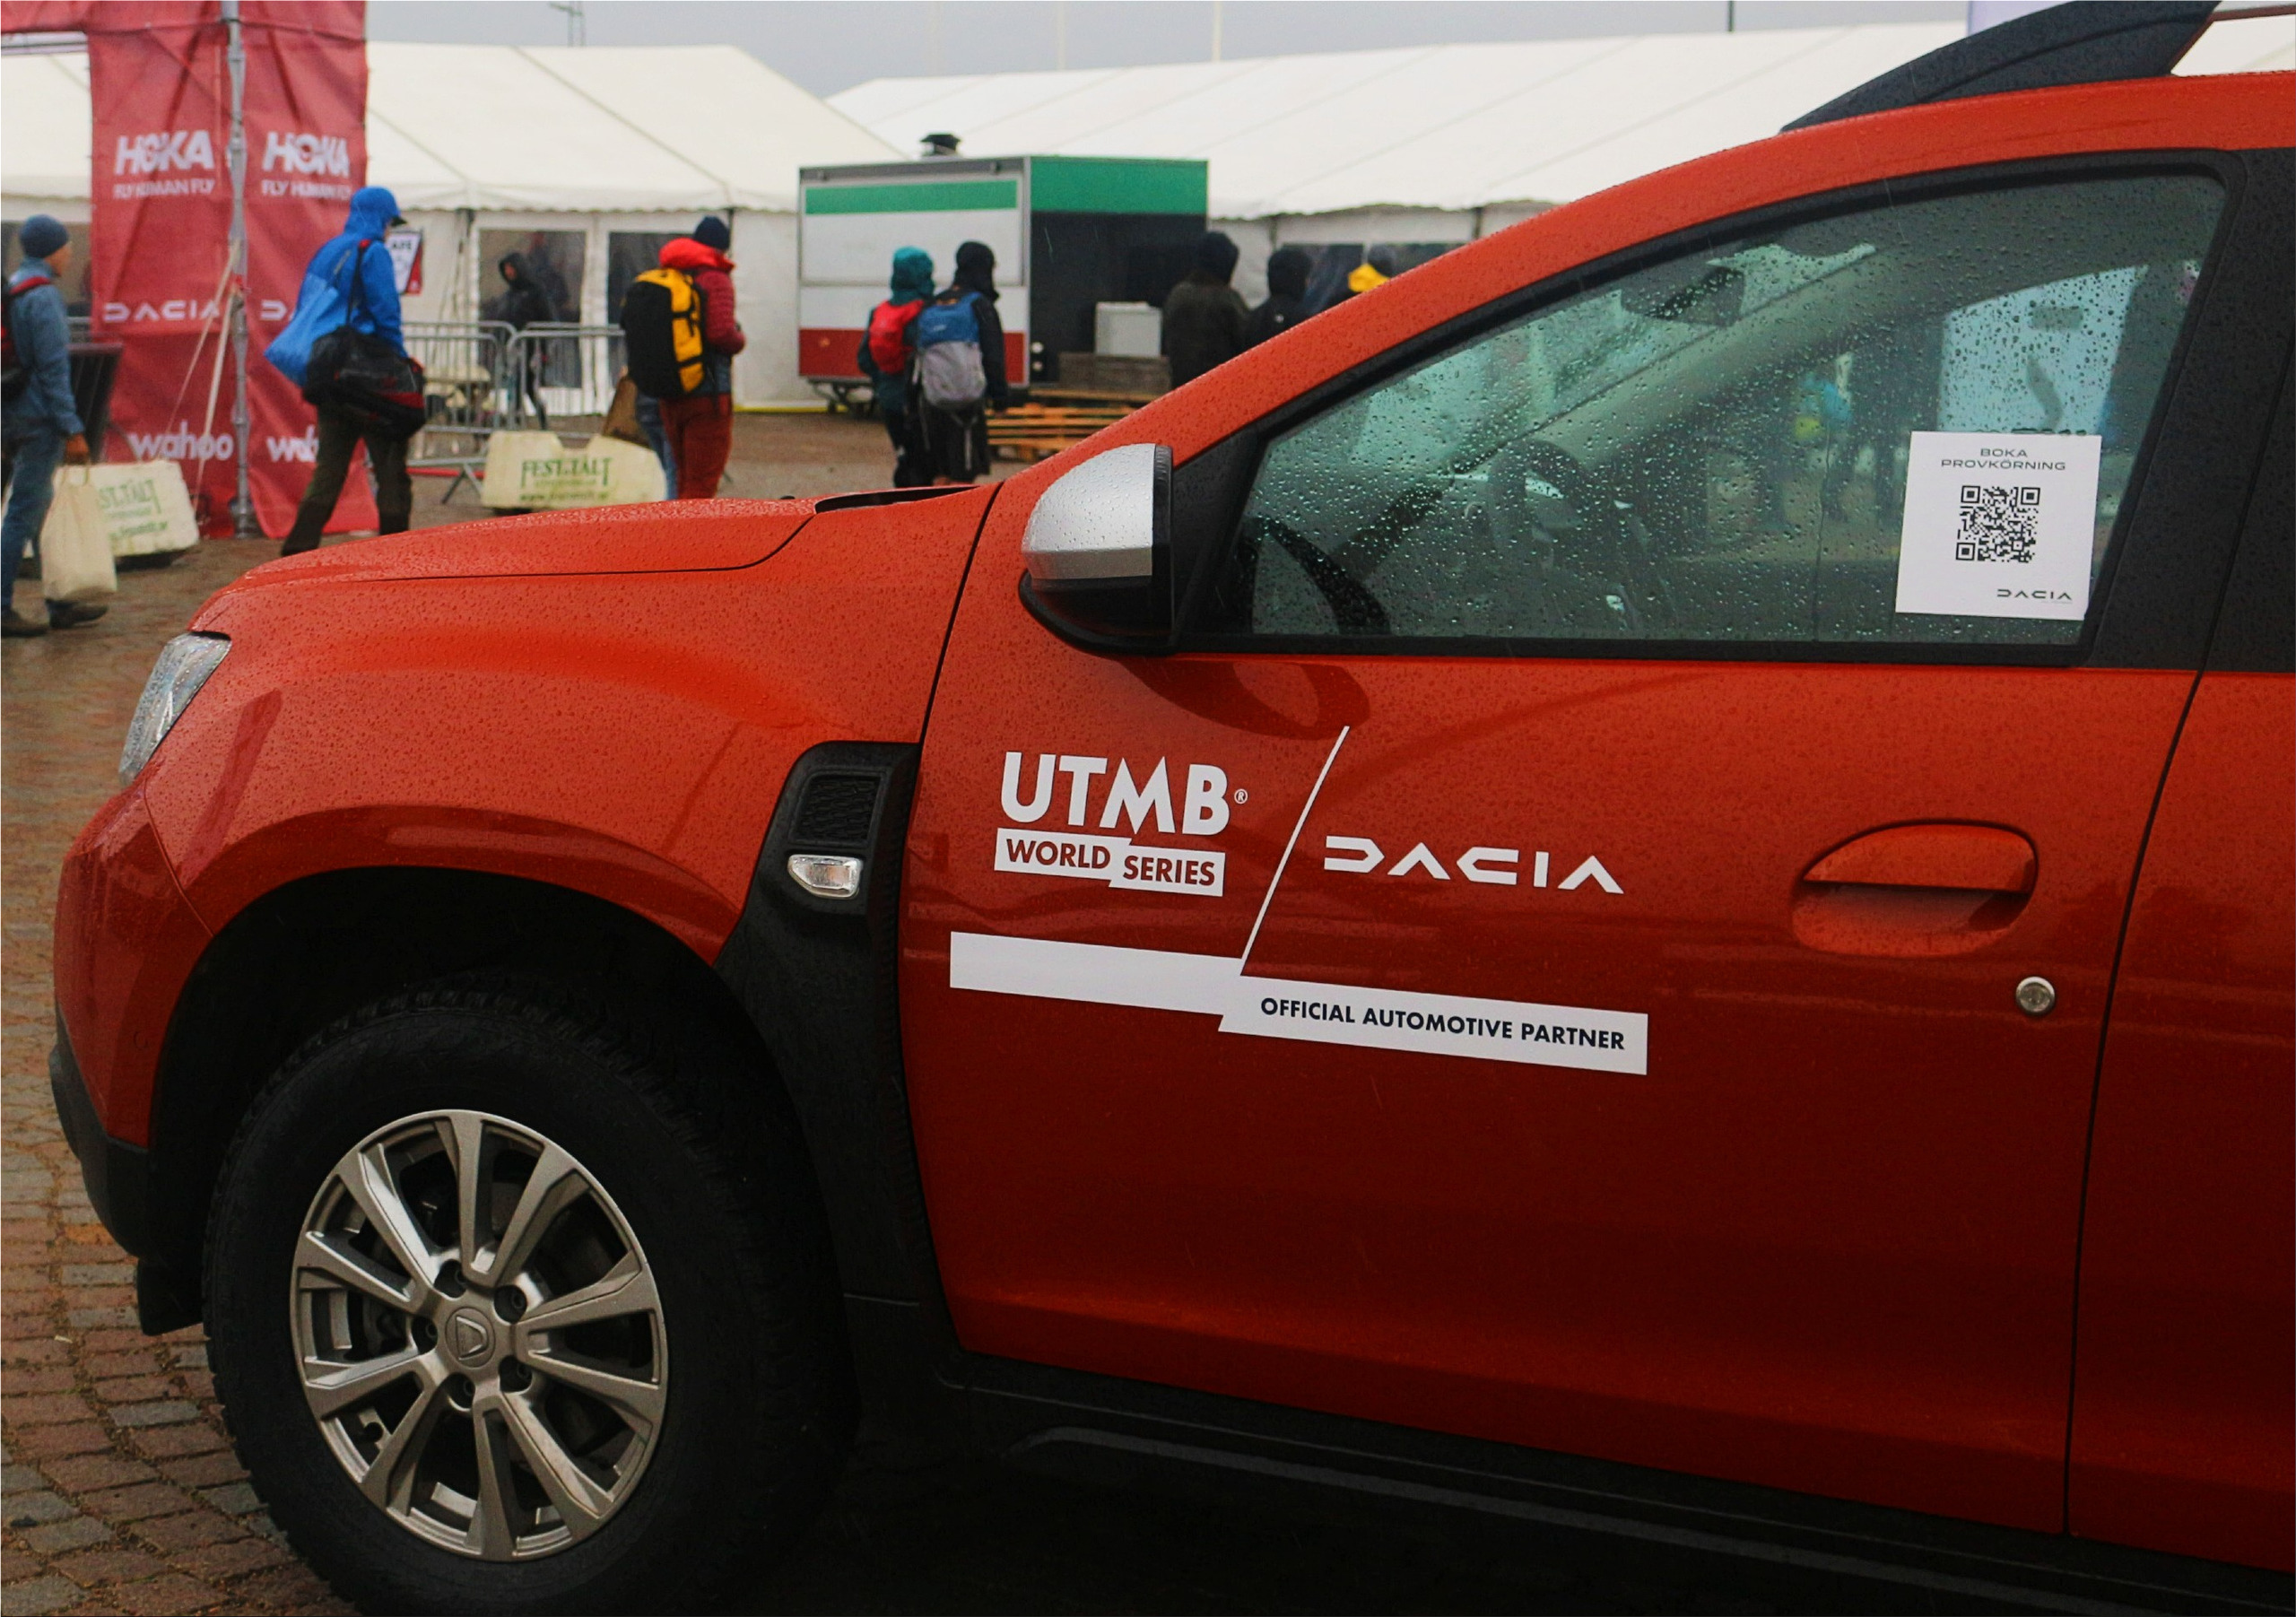 Dacia Duster and Dacia Jogger during UTMB World Series